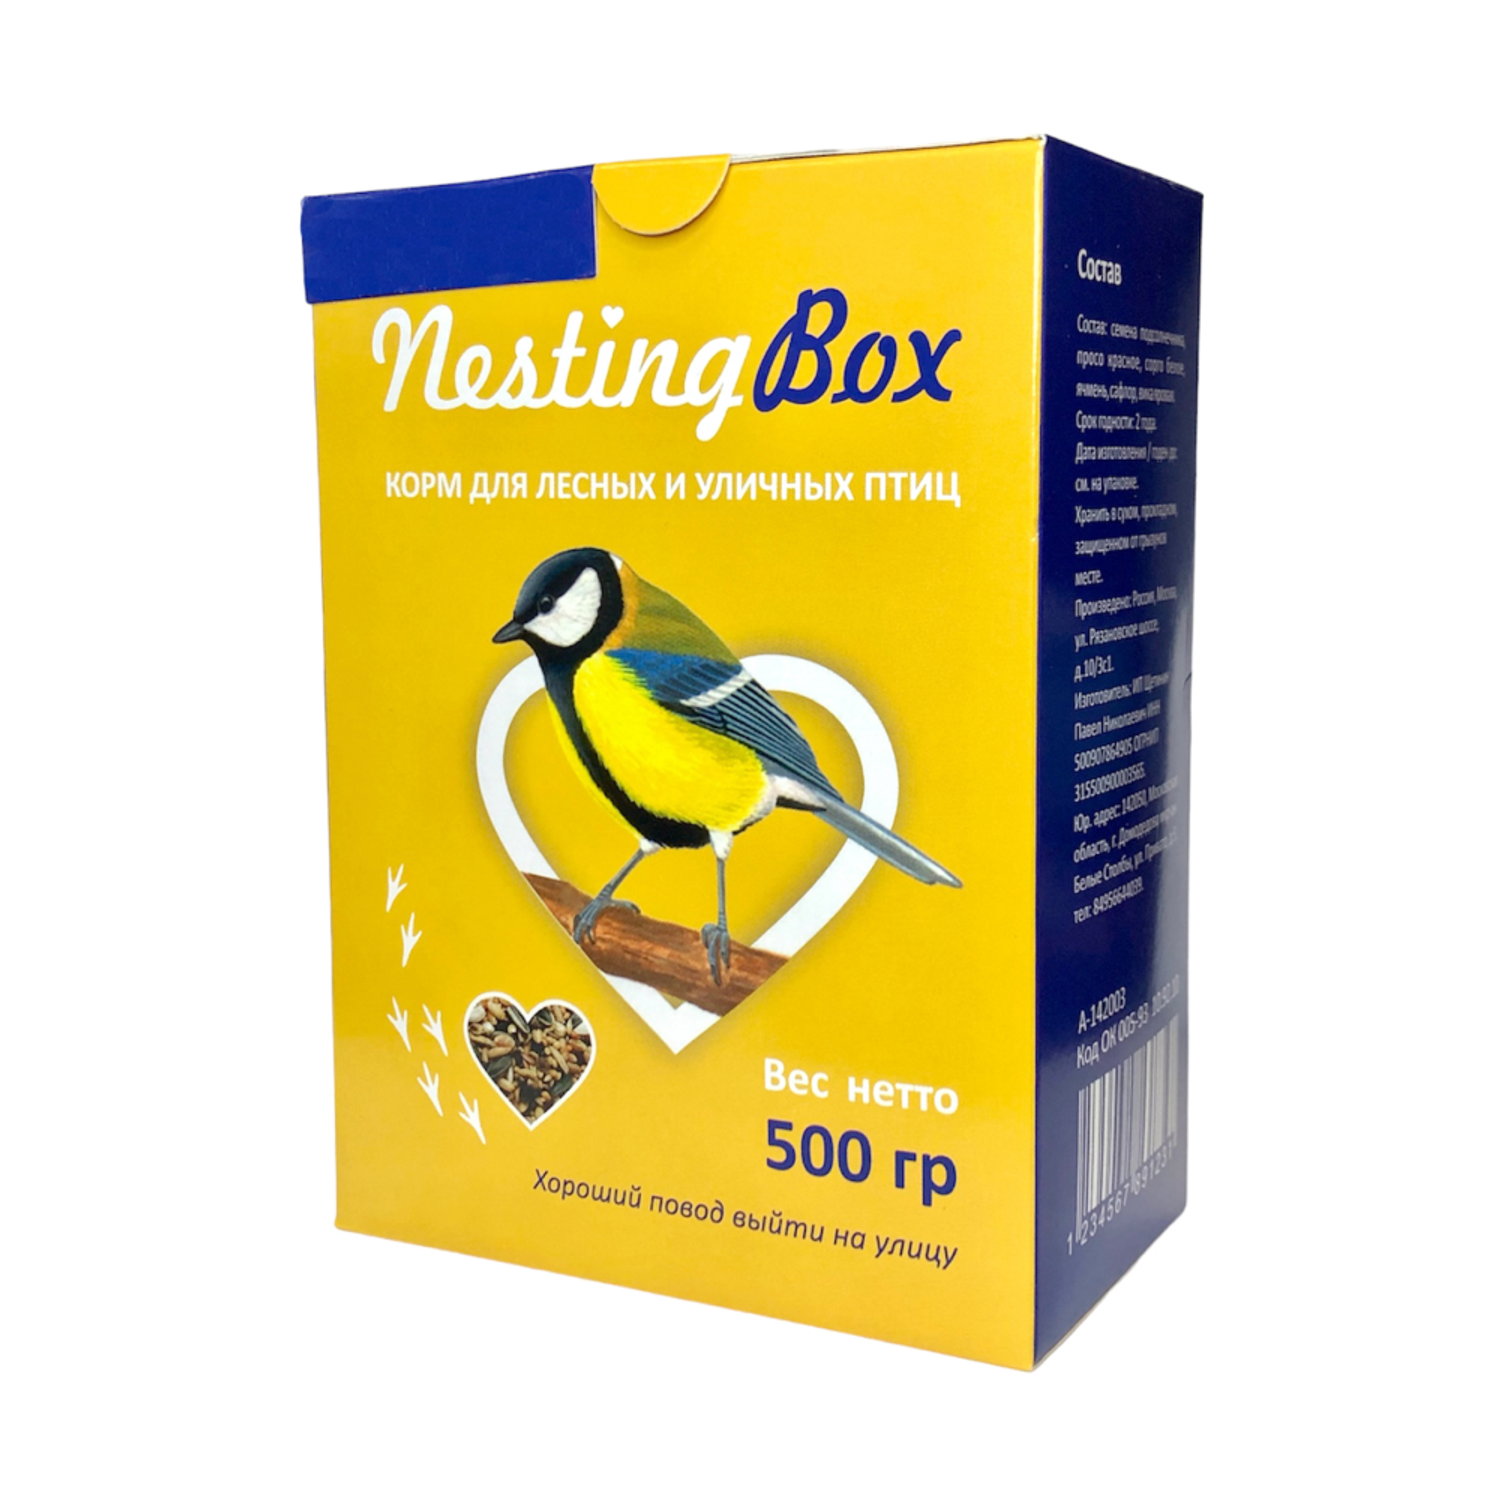 Корм Nestingbox для птиц - фото 1